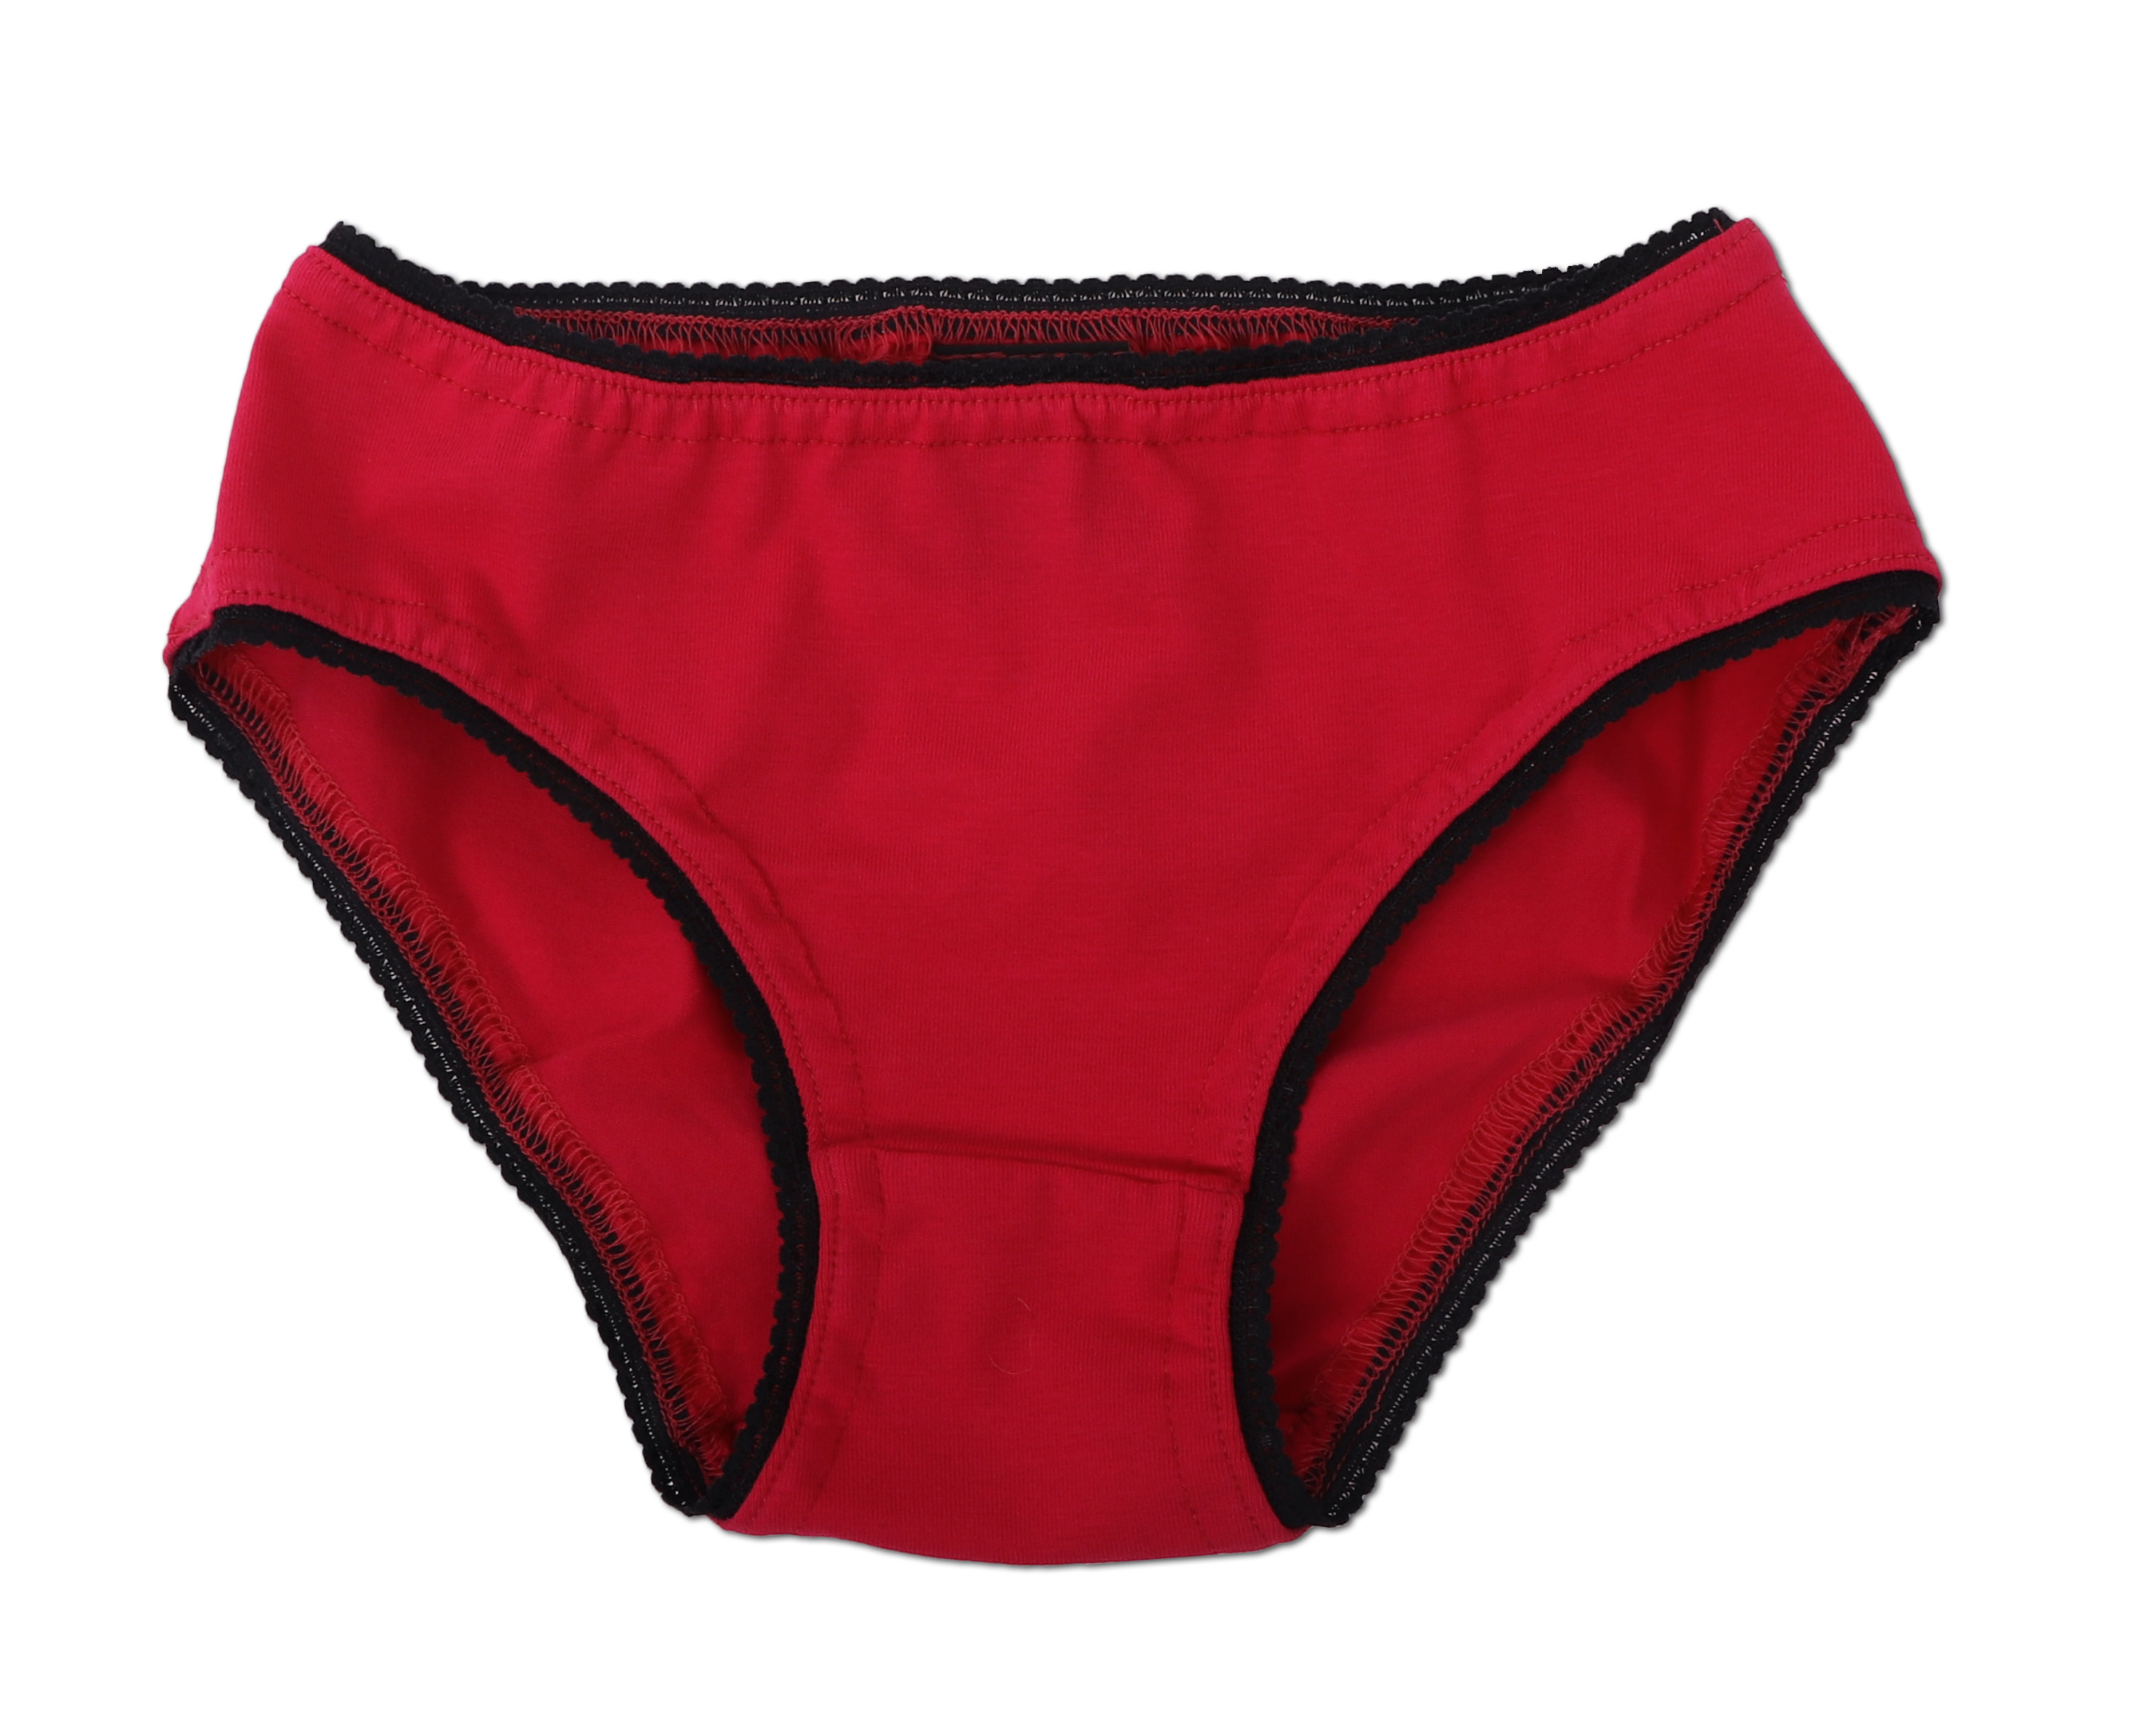  Women's Knickers - Red / Women's Knickers / Women's Lingerie  & Underwear: Fashion